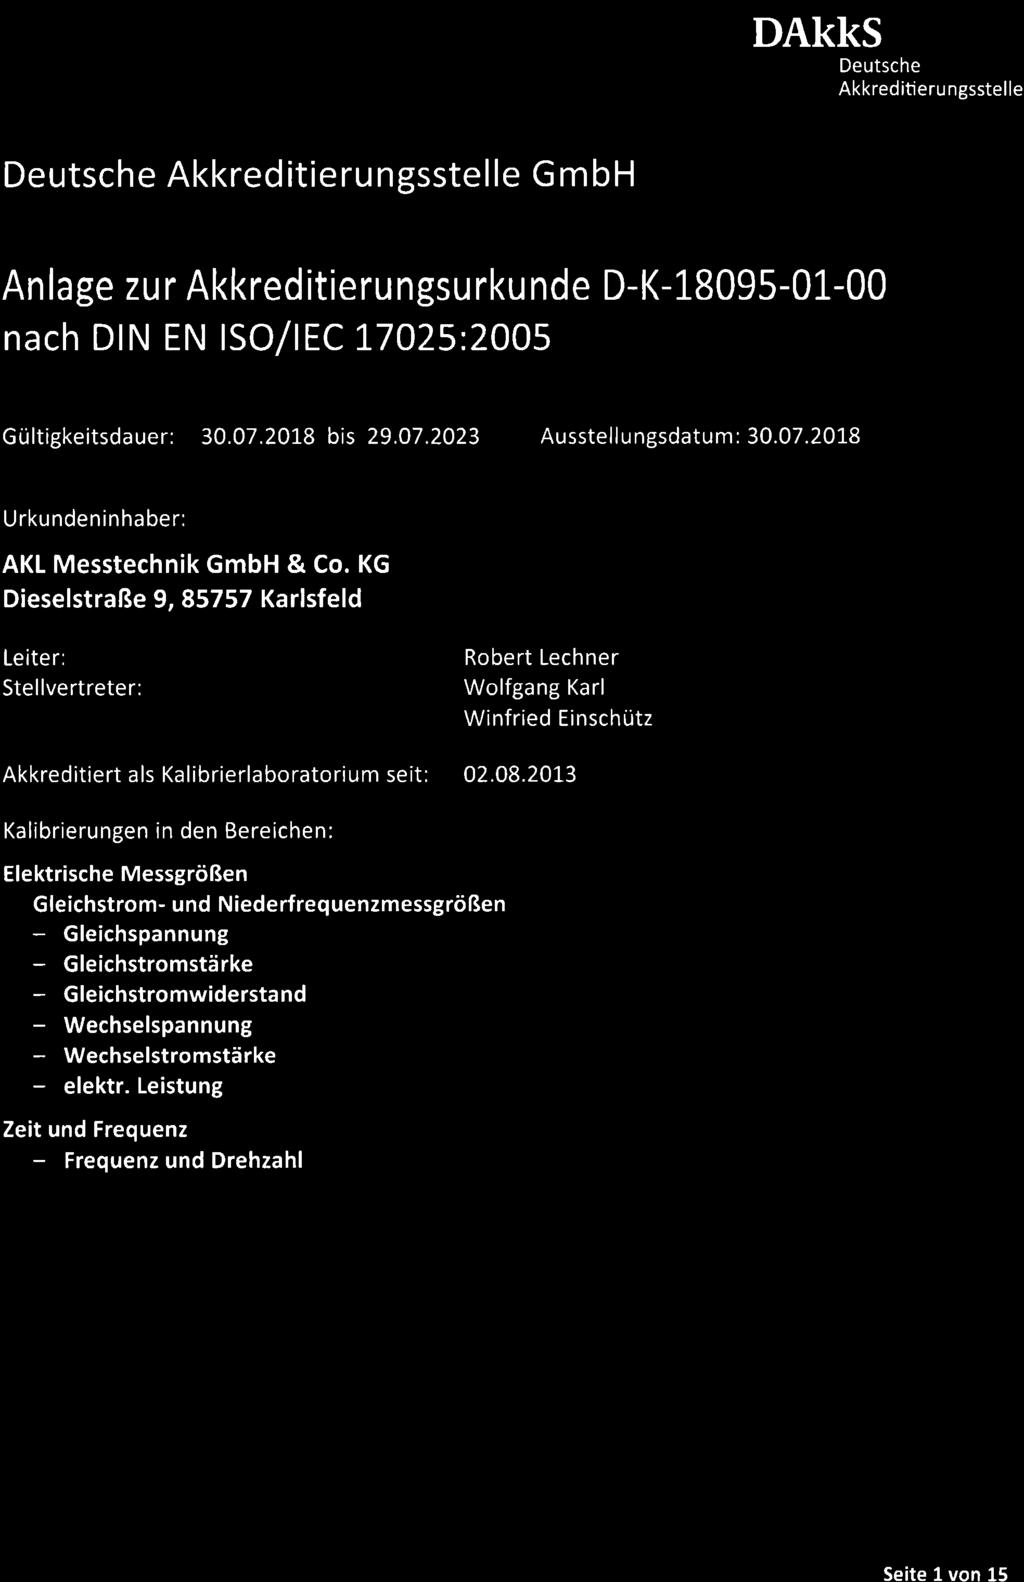 Akkreditieru ngsstelle Akkreditierungsstelle G mbh nach DIN EN ISO/IEC 17025:2005 Gültigkeitsdauer: 30.07.2018 bis 29.07.2023 Ausstellungsdatum: 30.07.201.8 Urkundeninhaber: AKL Messtechnik GmbH & Co.